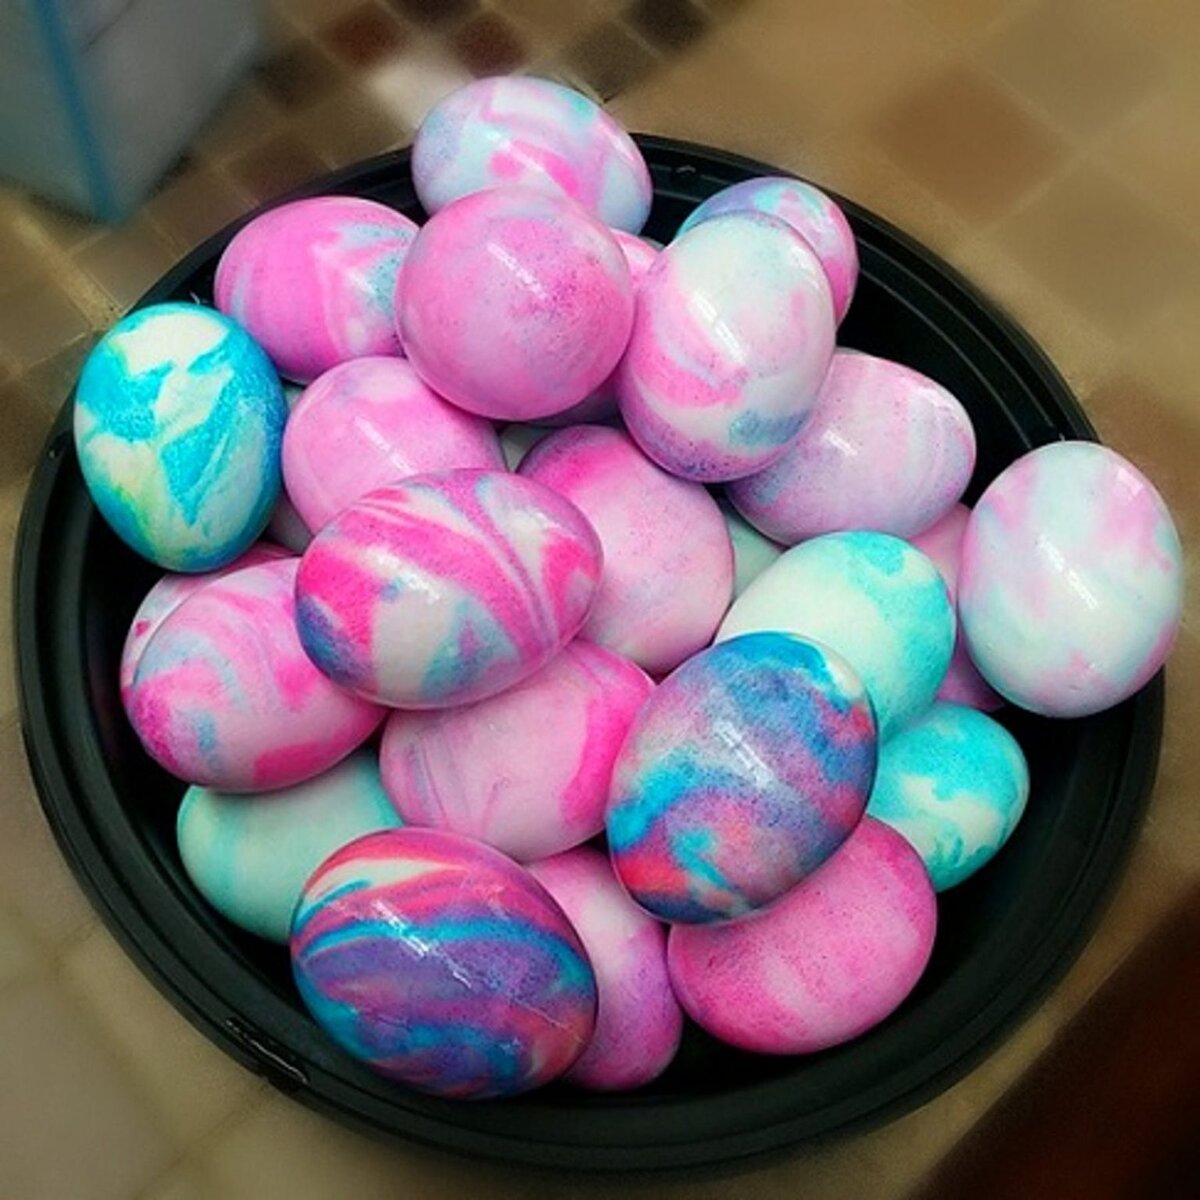 Пищевой краситель для яиц можно. Окрашивание пасхальных яиц. Способы окрашивания яиц на Пасху. Необычные яйца на Пасху. Окрашивание яиц пищевыми красителями.